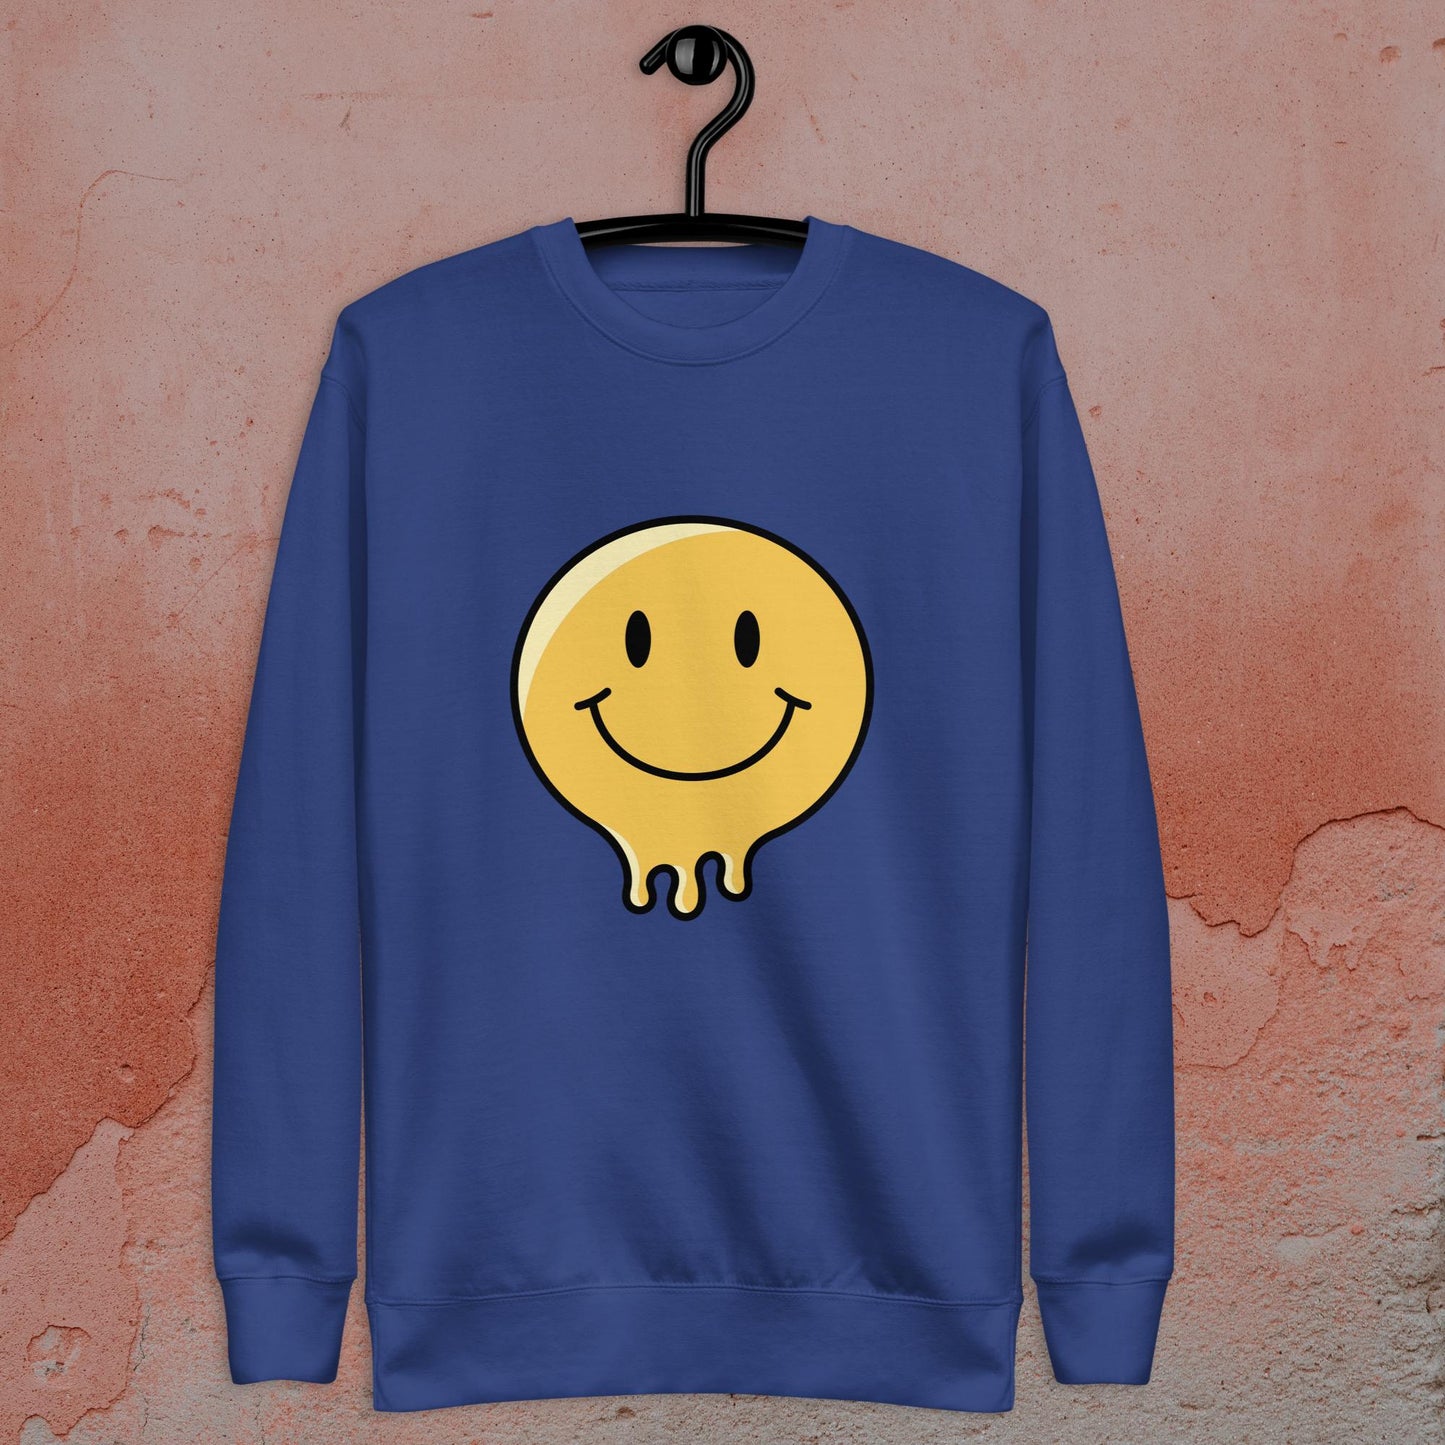 Spread the Joy: Smiley Face Sweatshirt